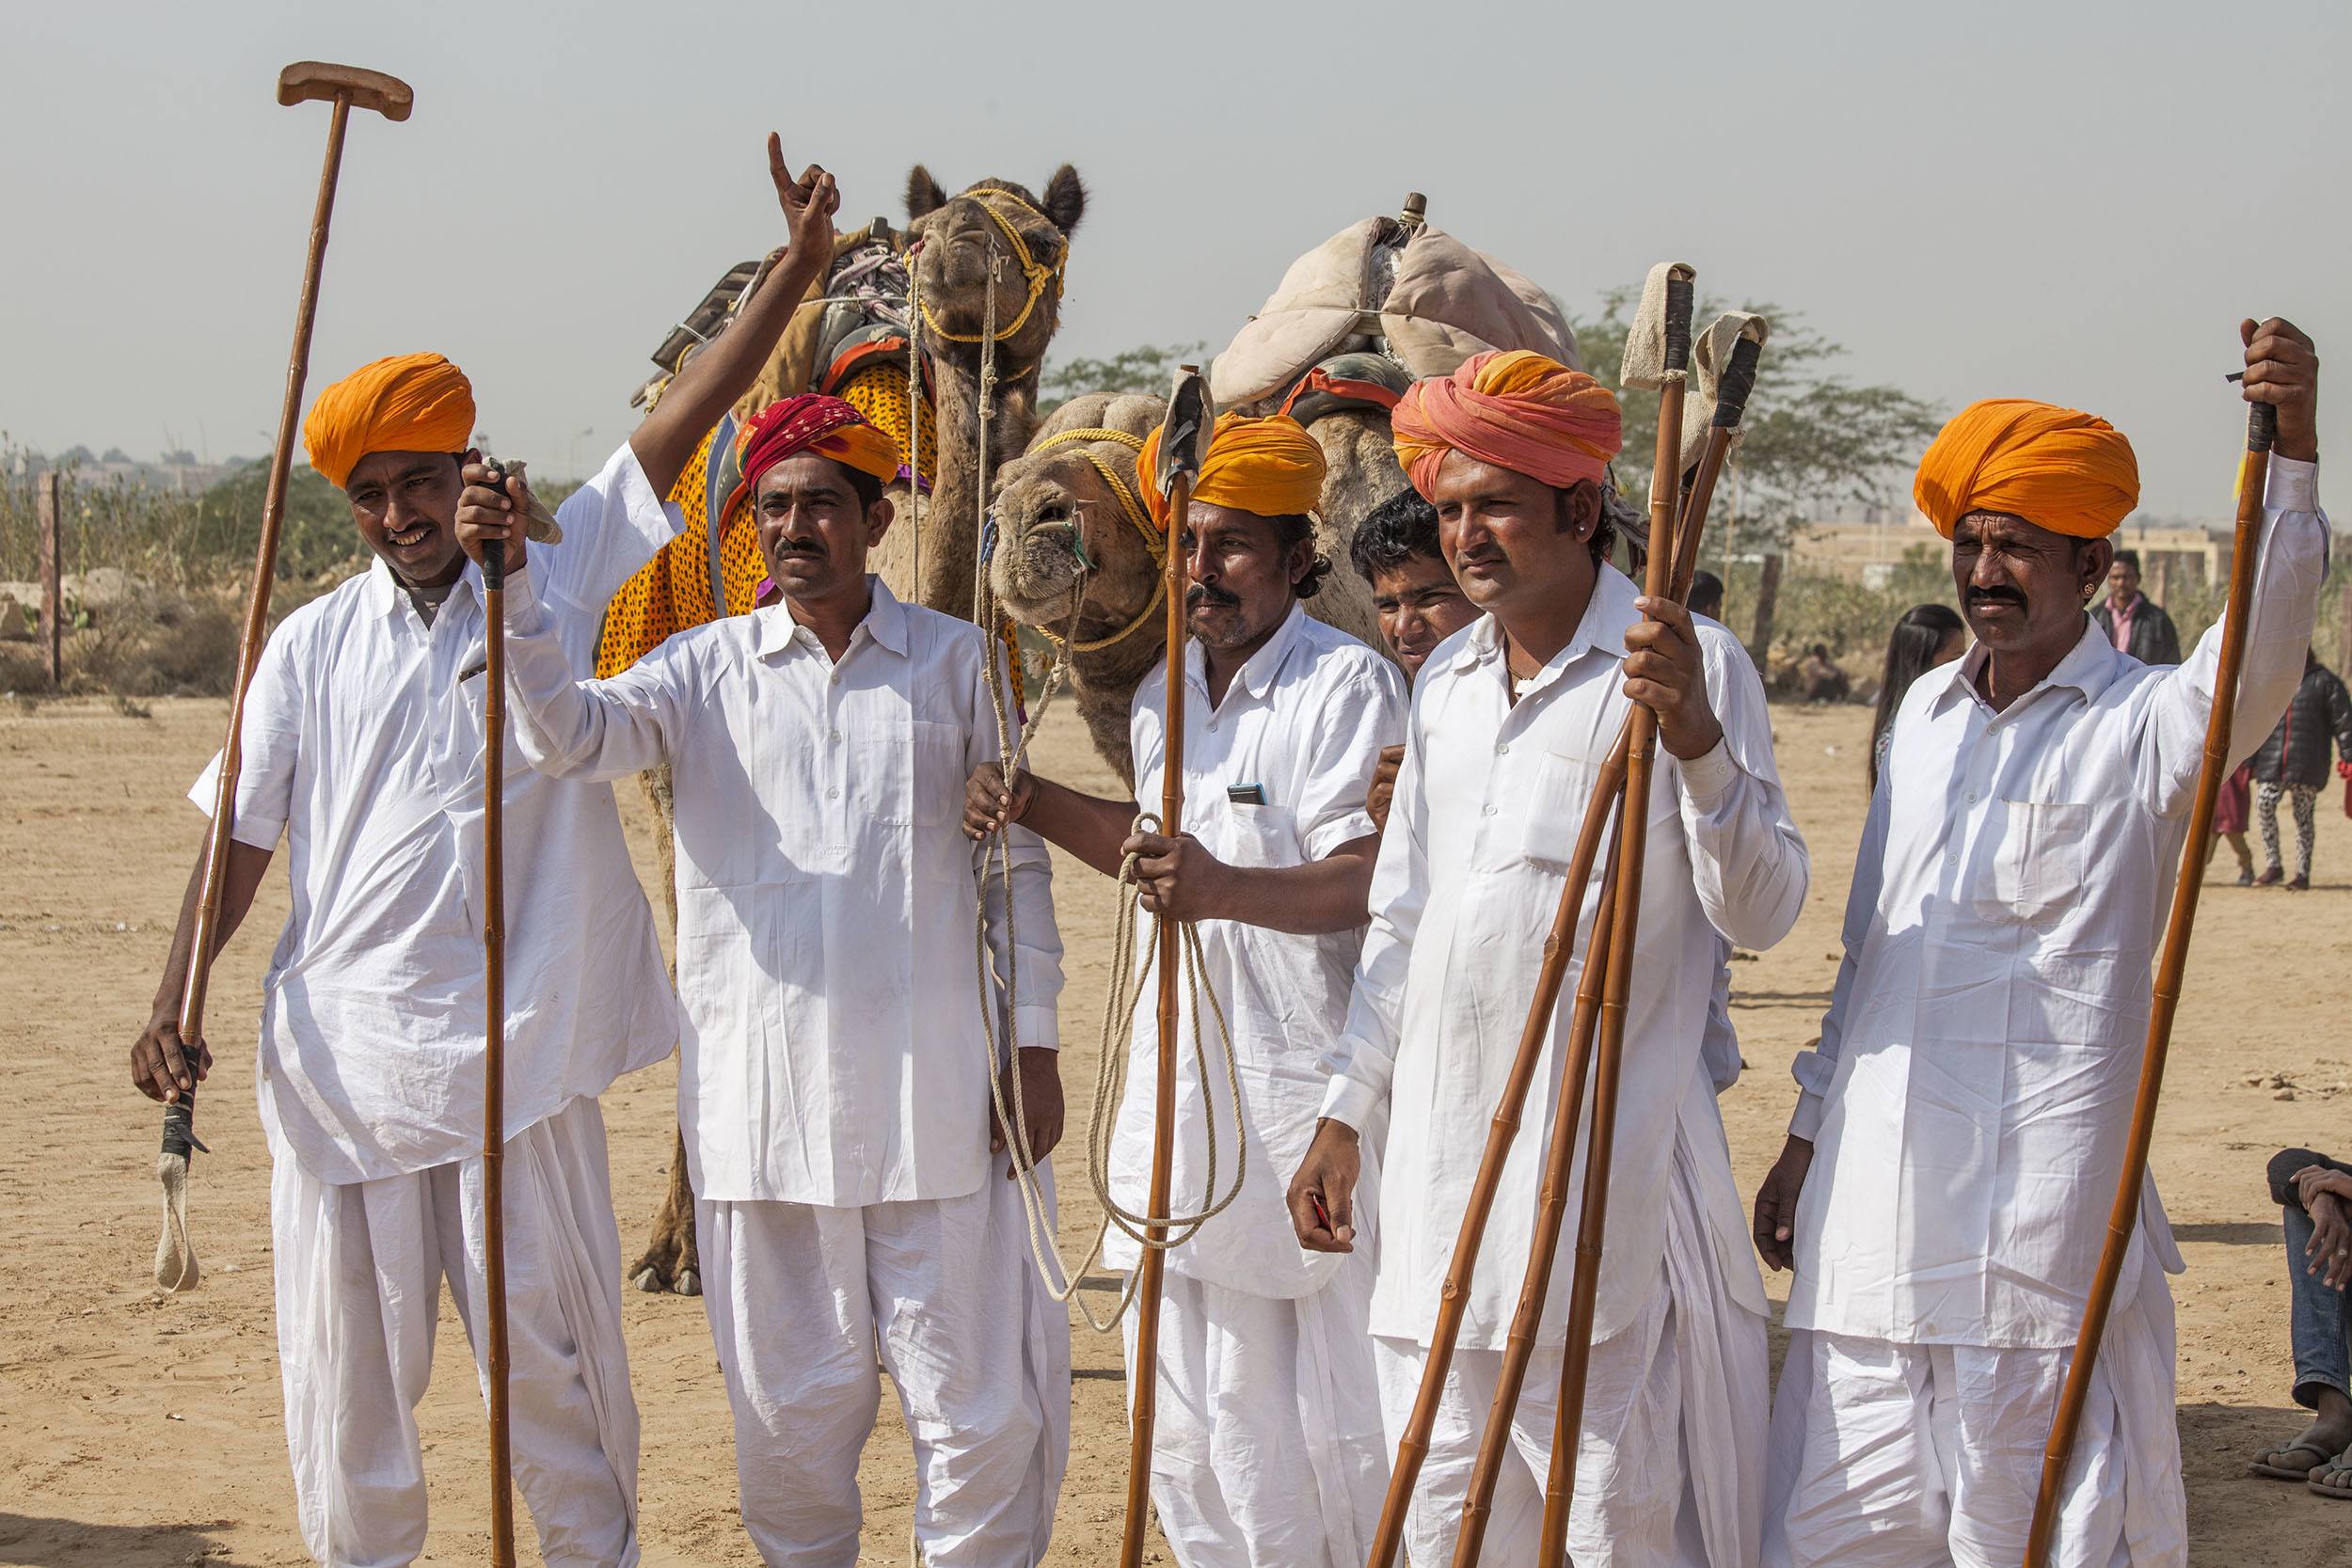 Men with orange turbans celebrating the Jaisalmer Desert Festival in India